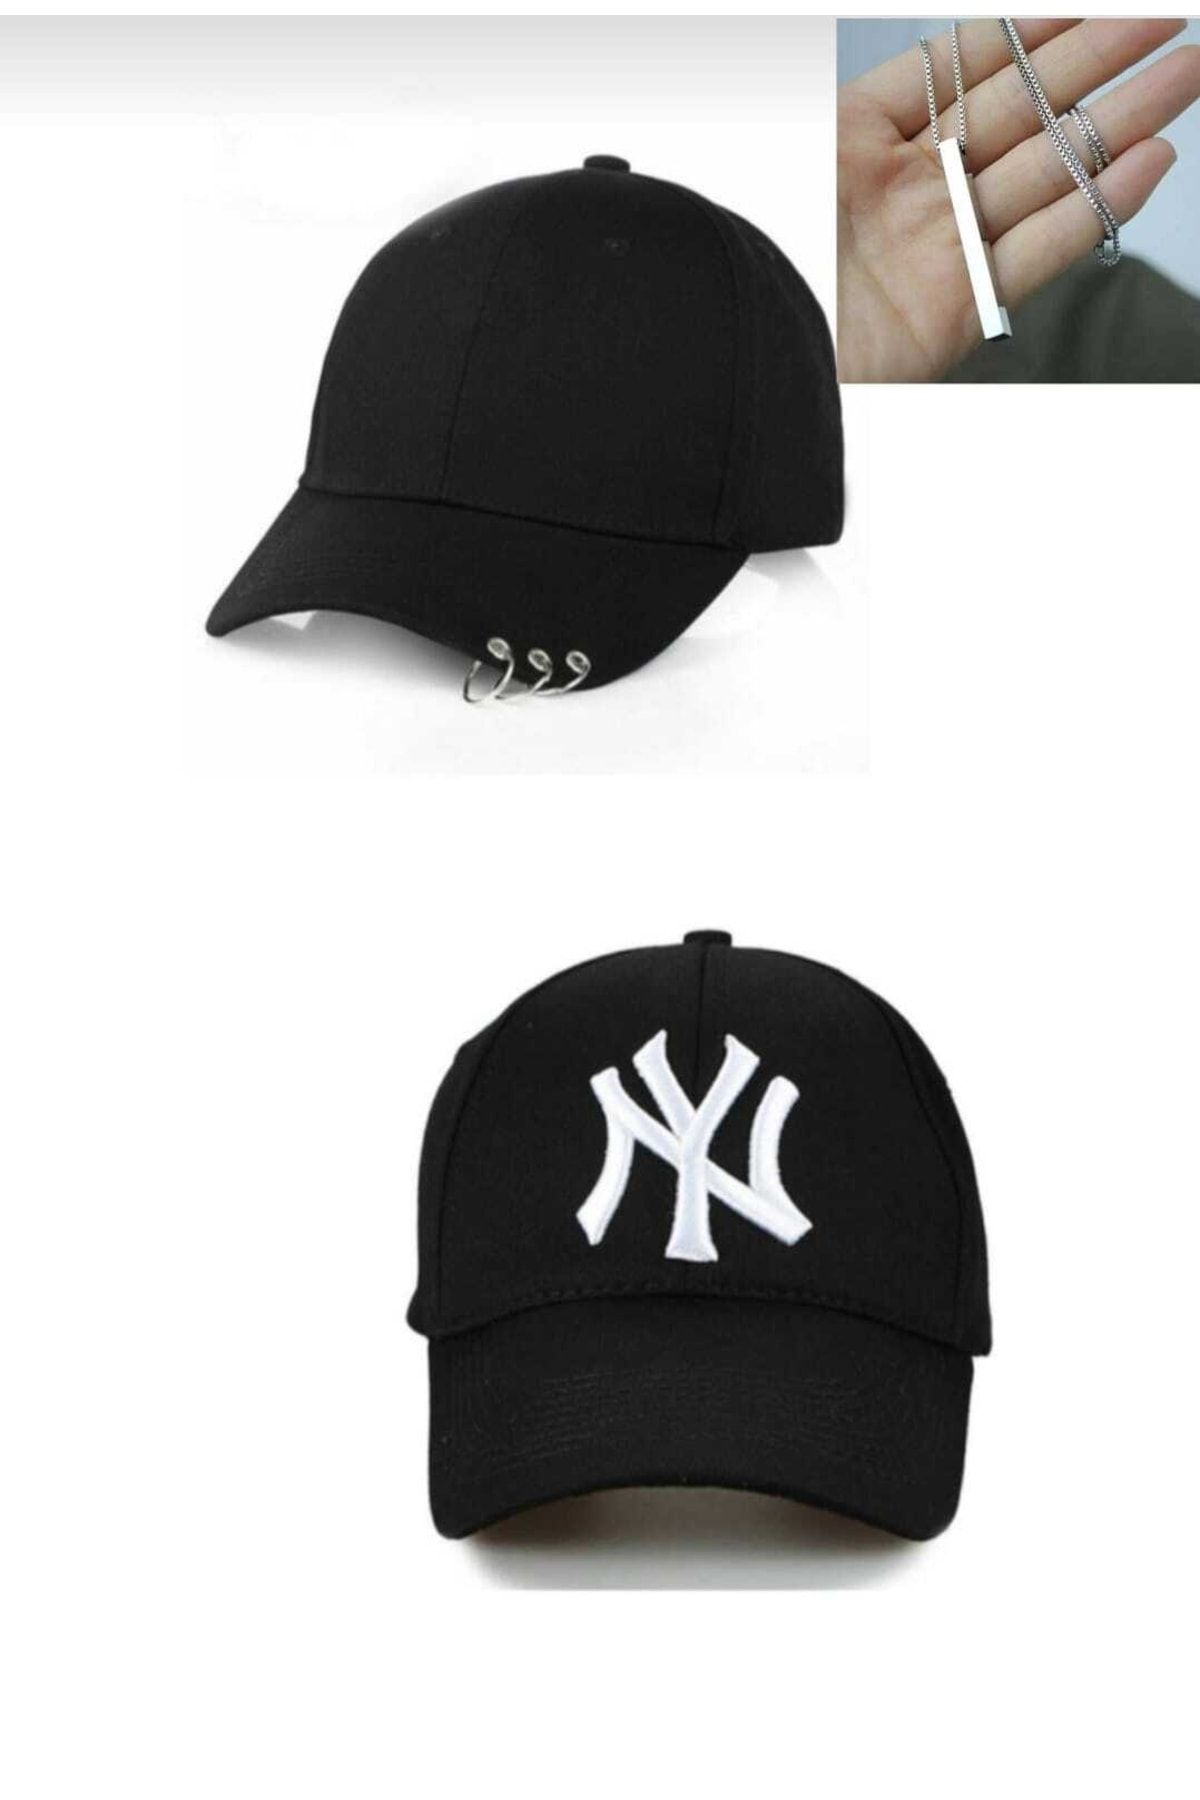 2'li Ny New York Yankees Beyzbol Kep Şapka Emka